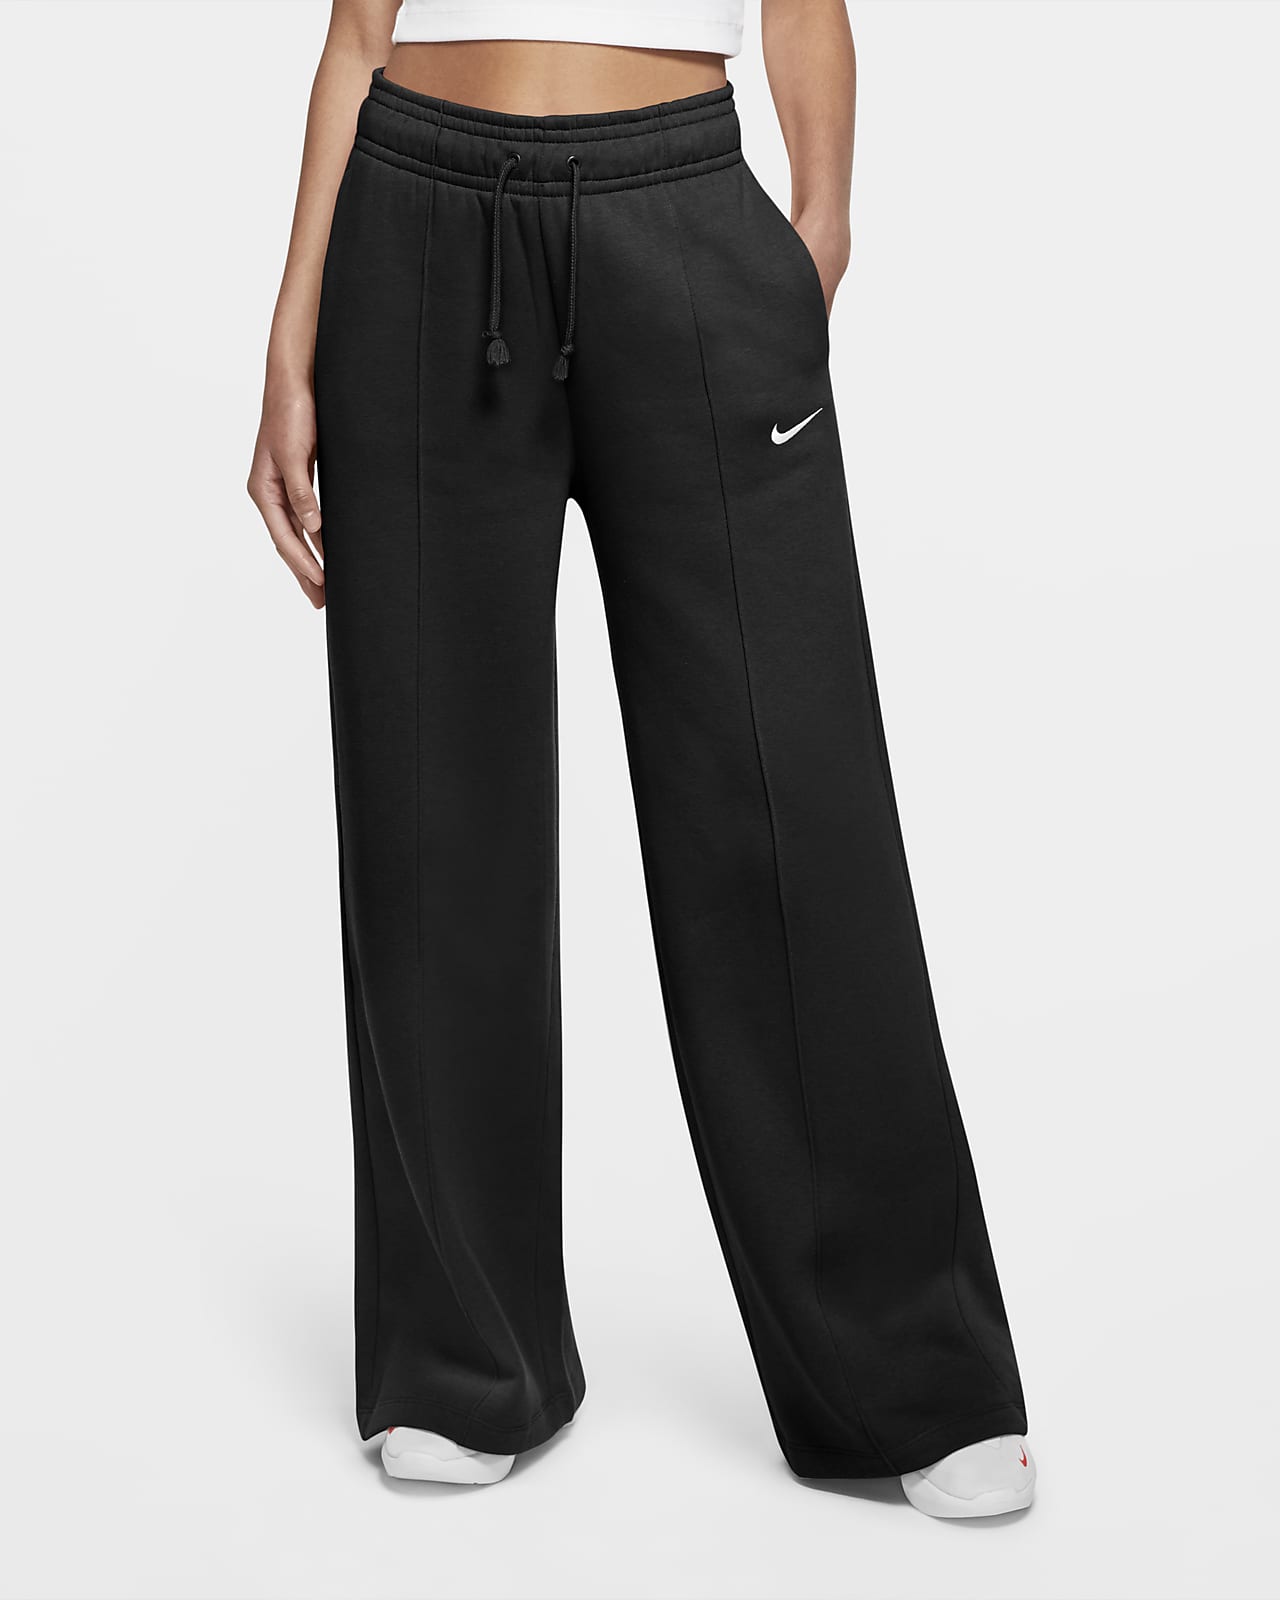 Nike Sportswear Trend Women's Fleece 